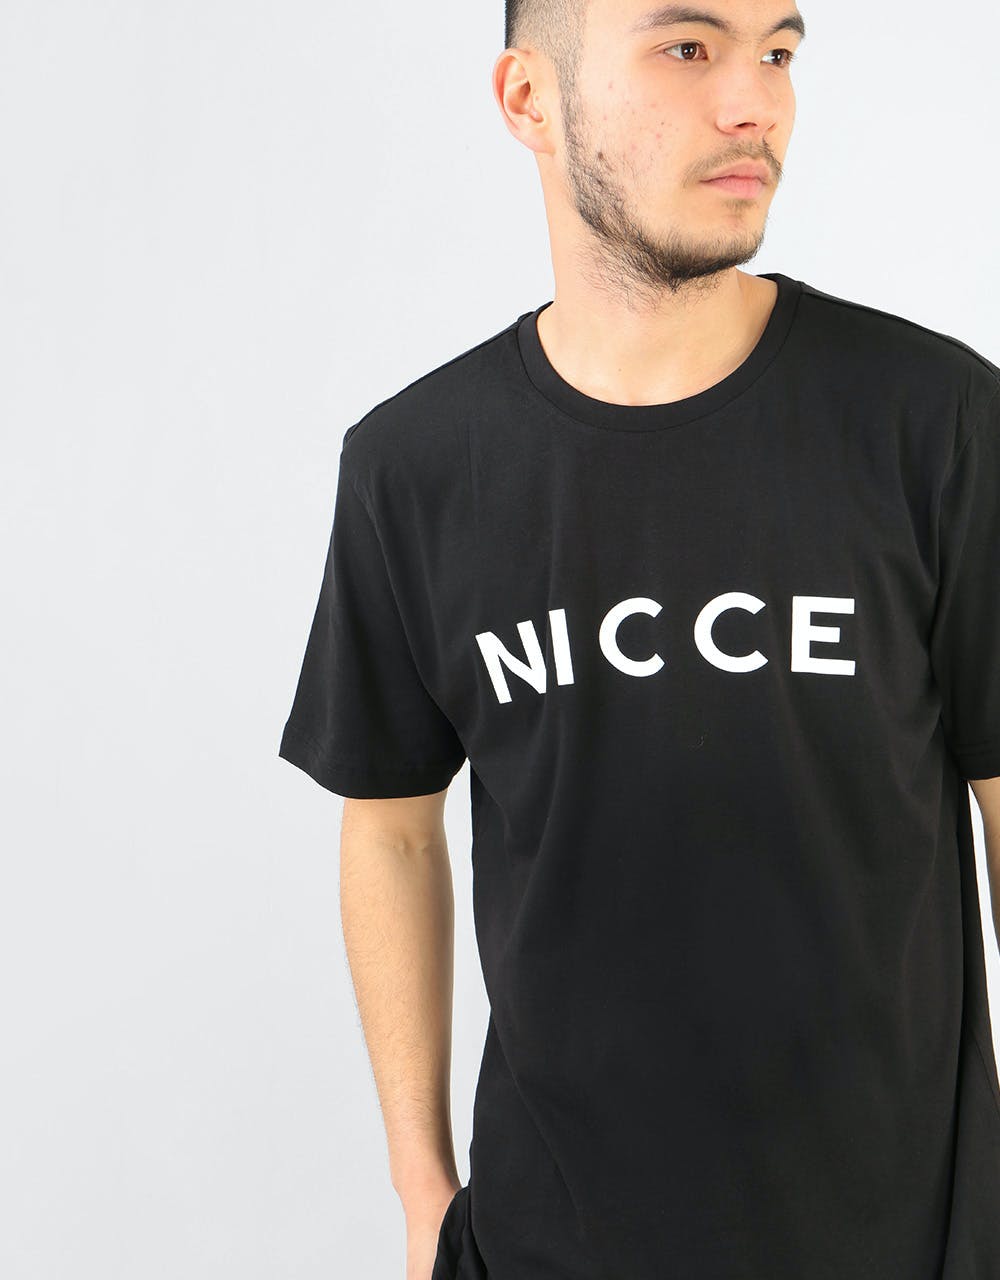 Nicce Original Logo T-Shirt - Black